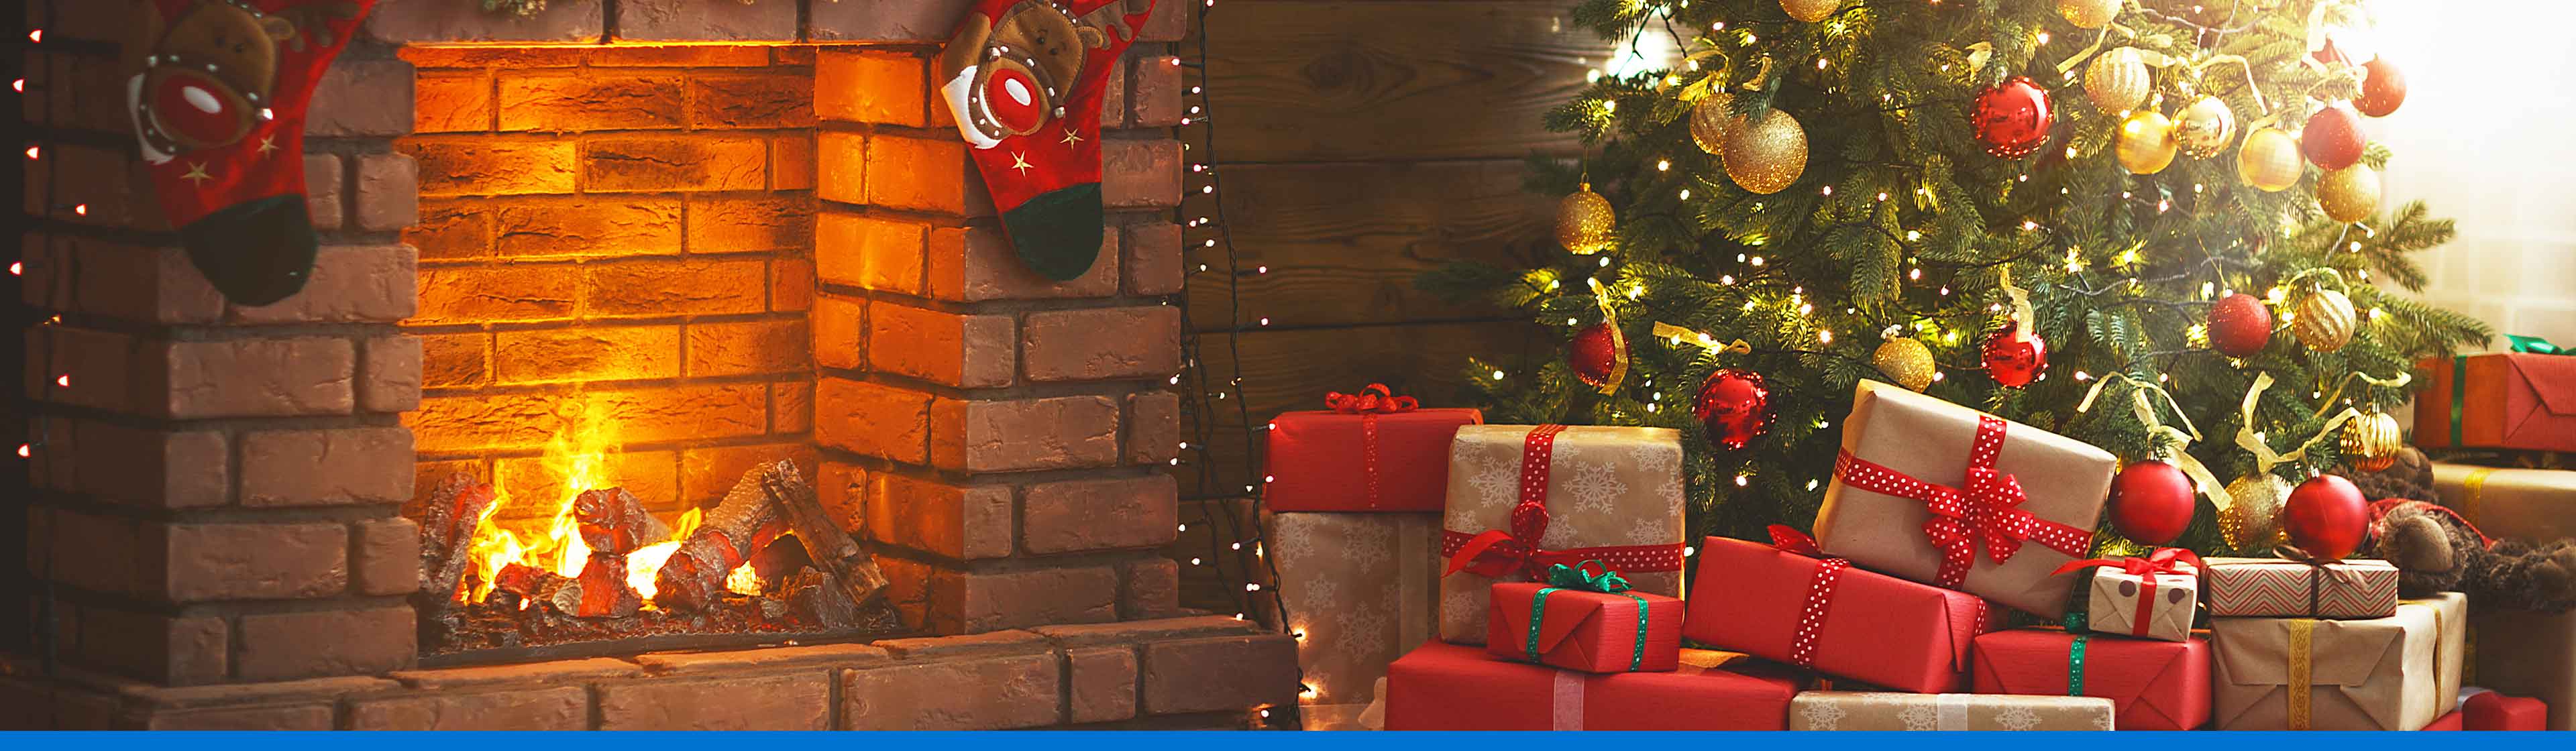 Decoración de navidad para árbol y sala de estar